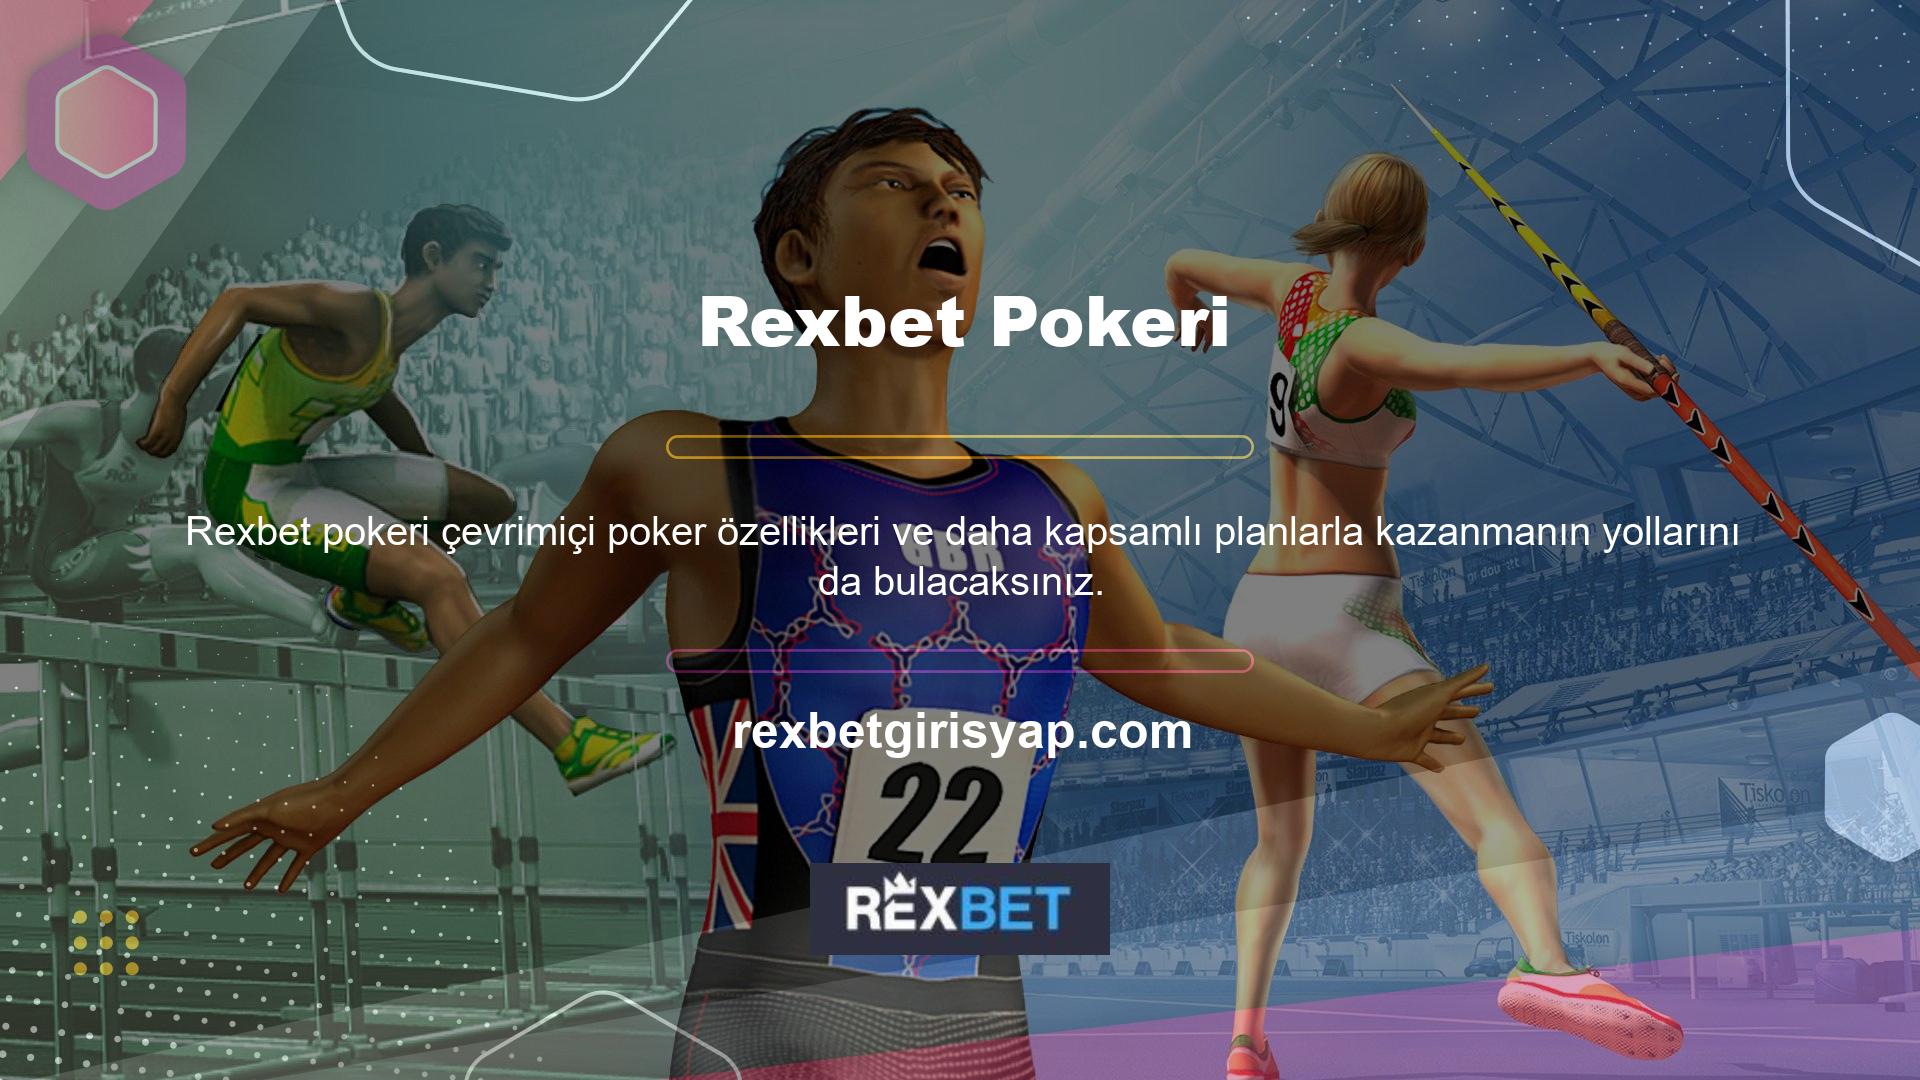 Rexbet casino sisteminde böyle bir sürecin devam ettirilmesi aslında daha verimli bir oyun tarzının oluşmasını sağlayabilir